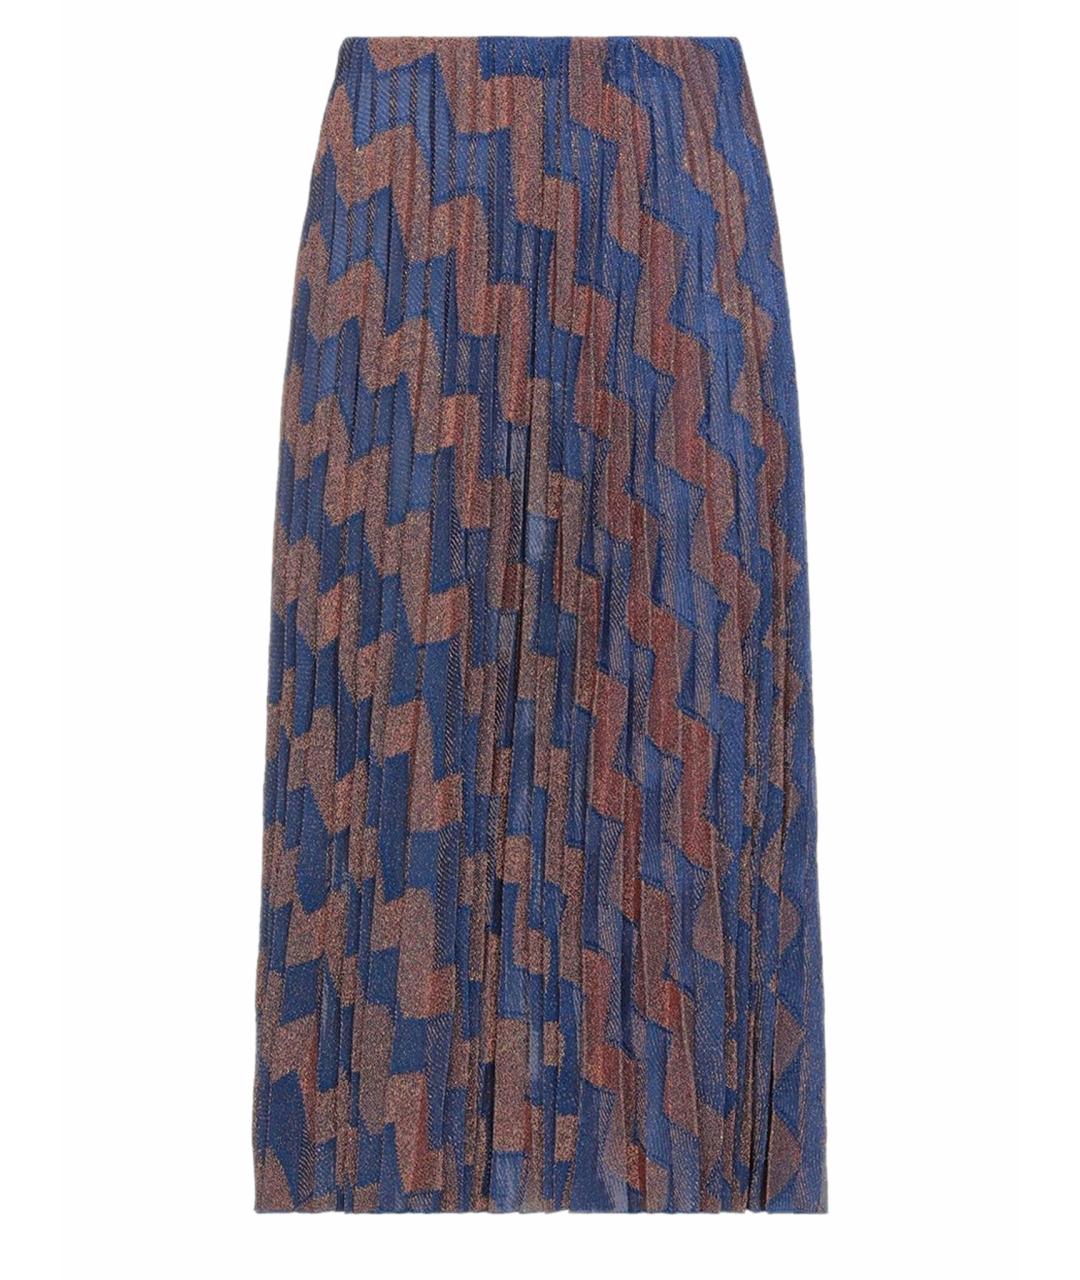 M MISSONI Синяя синтетическая юбка миди, фото 1